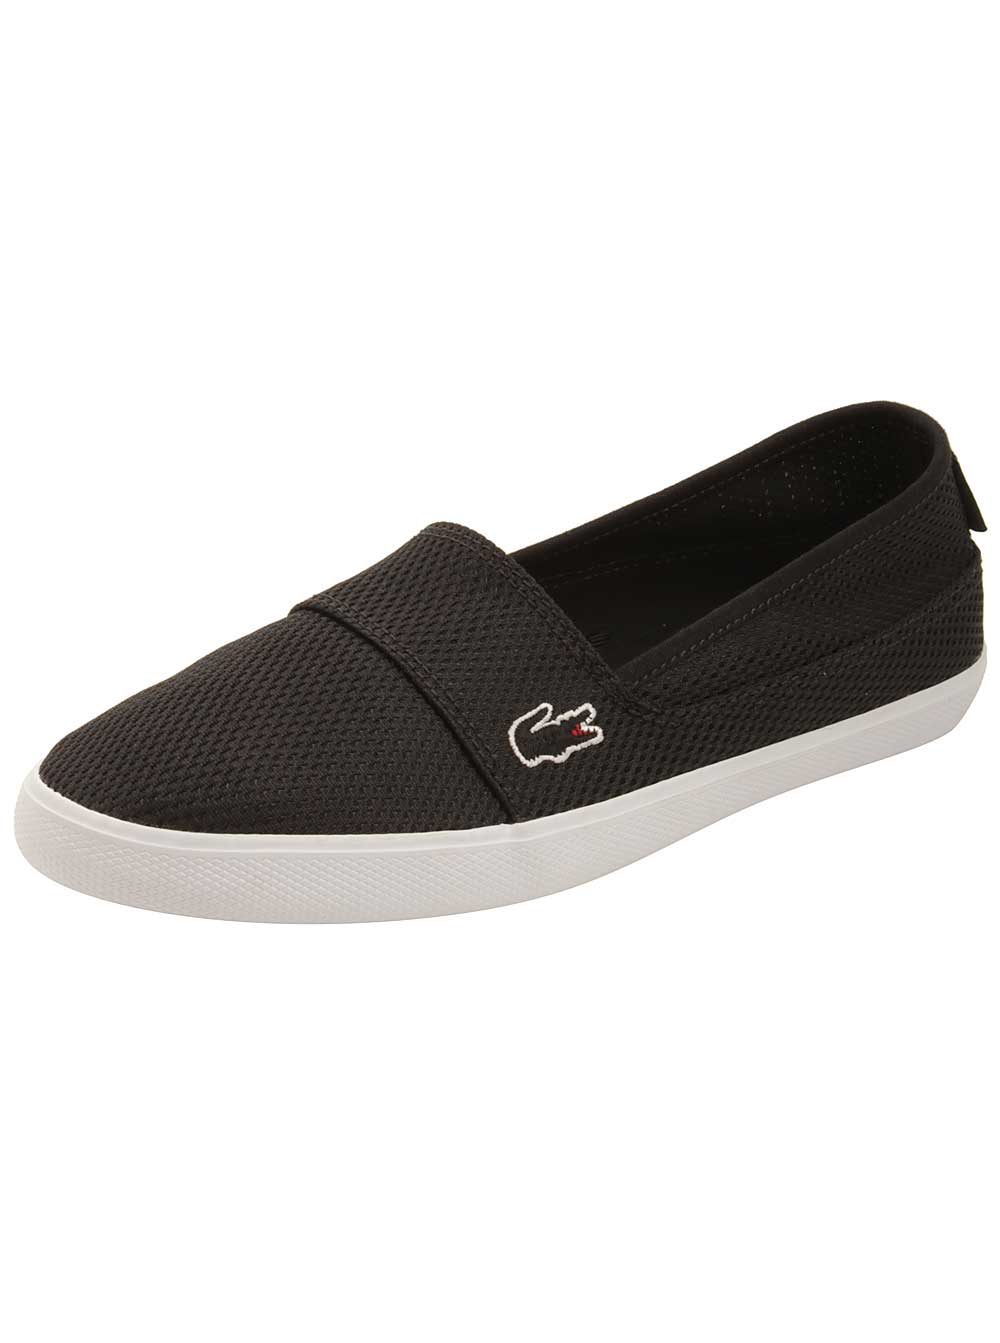 Lacoste Womens Marice Slip-On 216 Sneakers in Black - Walmart.com